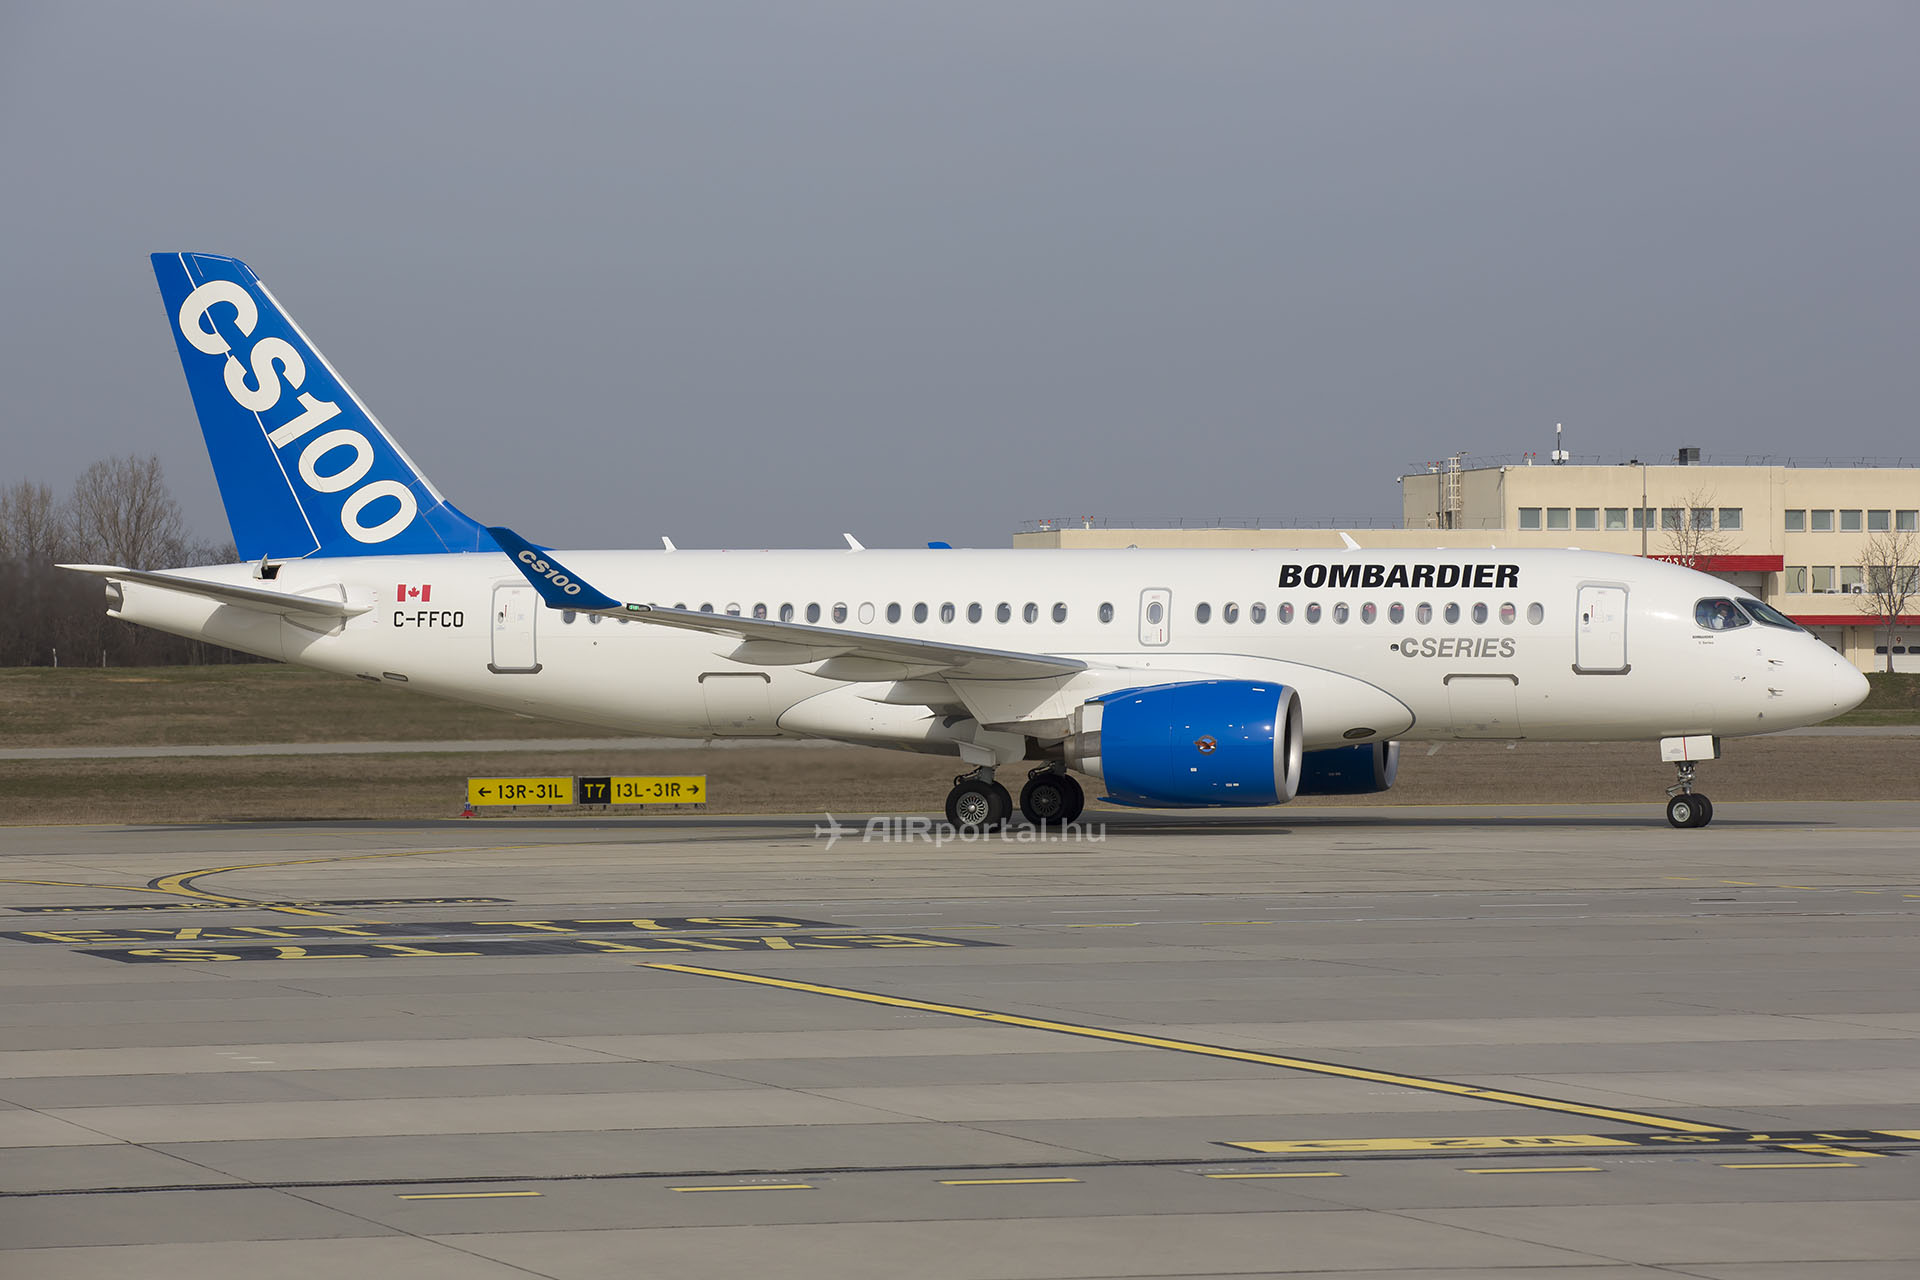 A Bombardier CS100-as március 10-én szállt le először Ferihegyen, akkor a Bombardier szakemberei útvonal-tesztelési program keretében jártak a ferihegyi repülőtéren. (Fotó: AIRportal.hu) | © AIRportal.hu